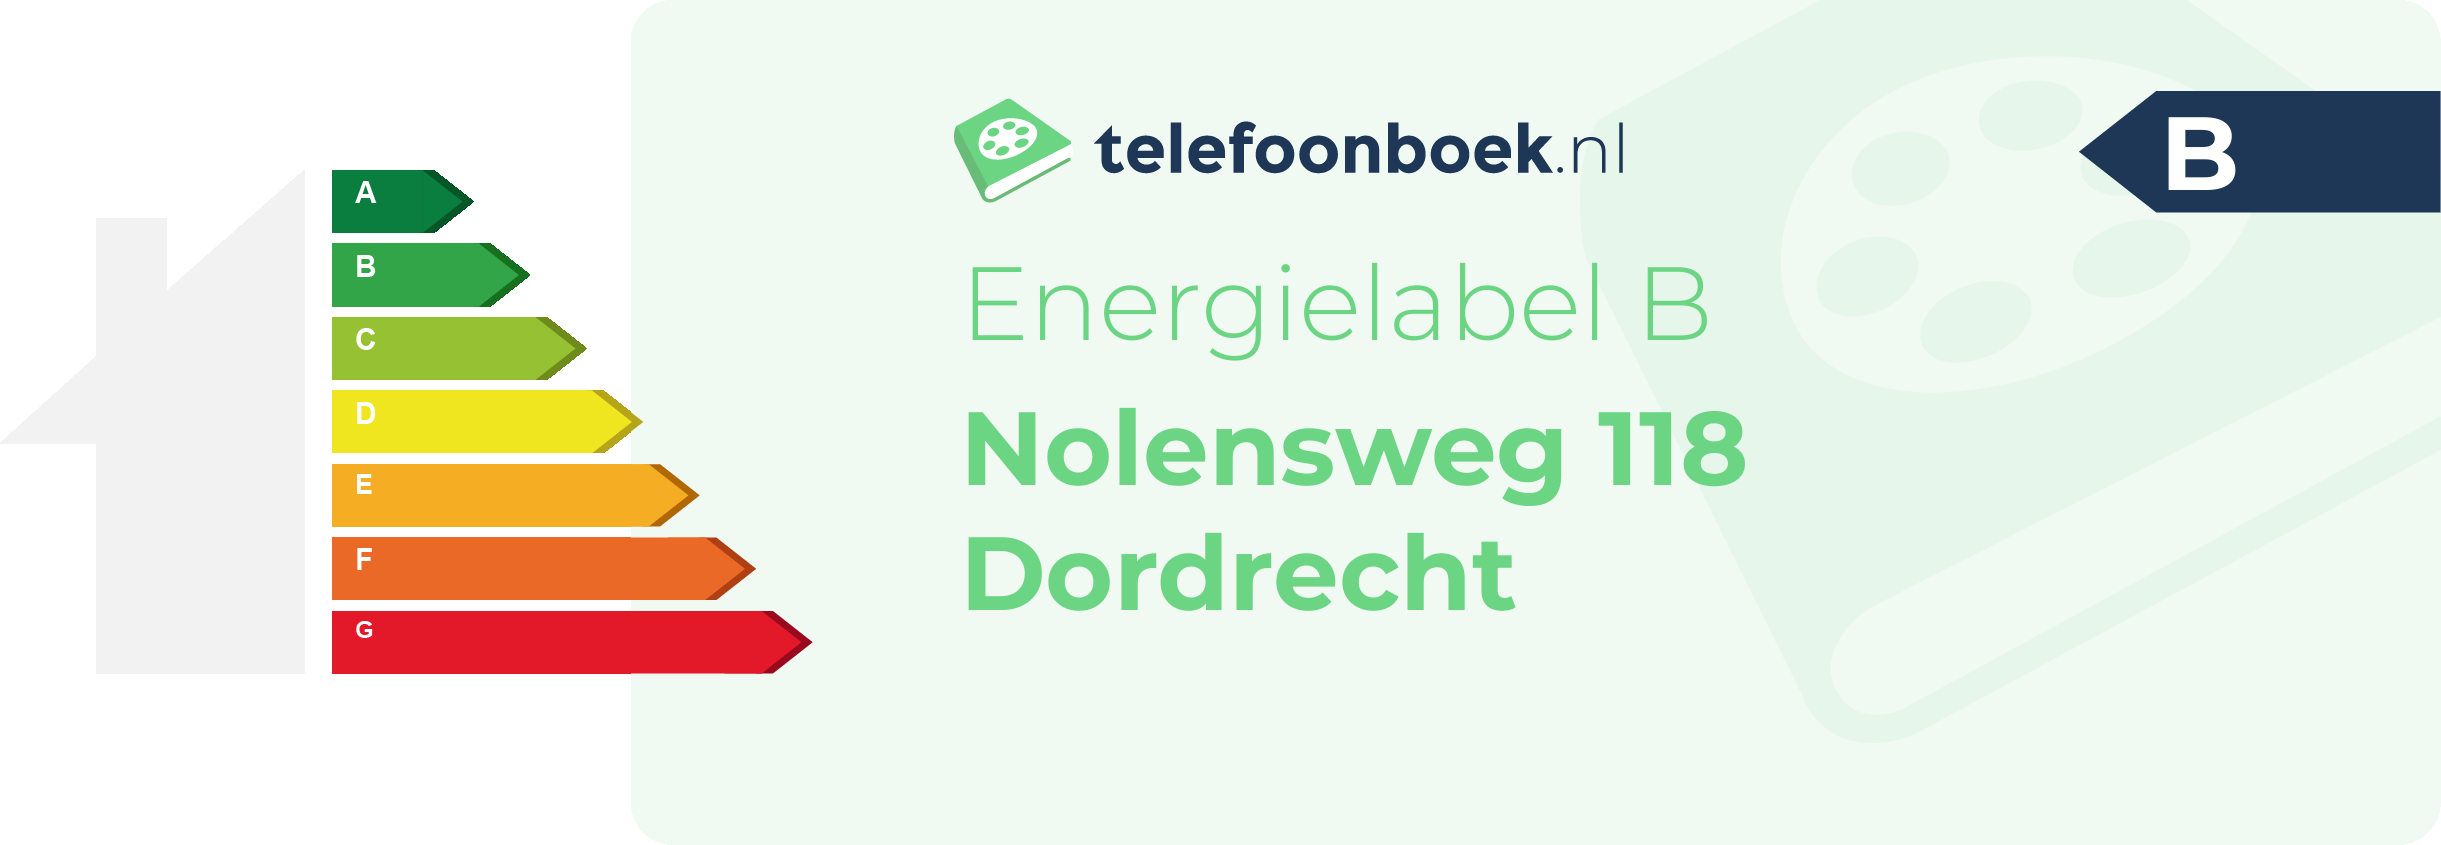 Energielabel Nolensweg 118 Dordrecht